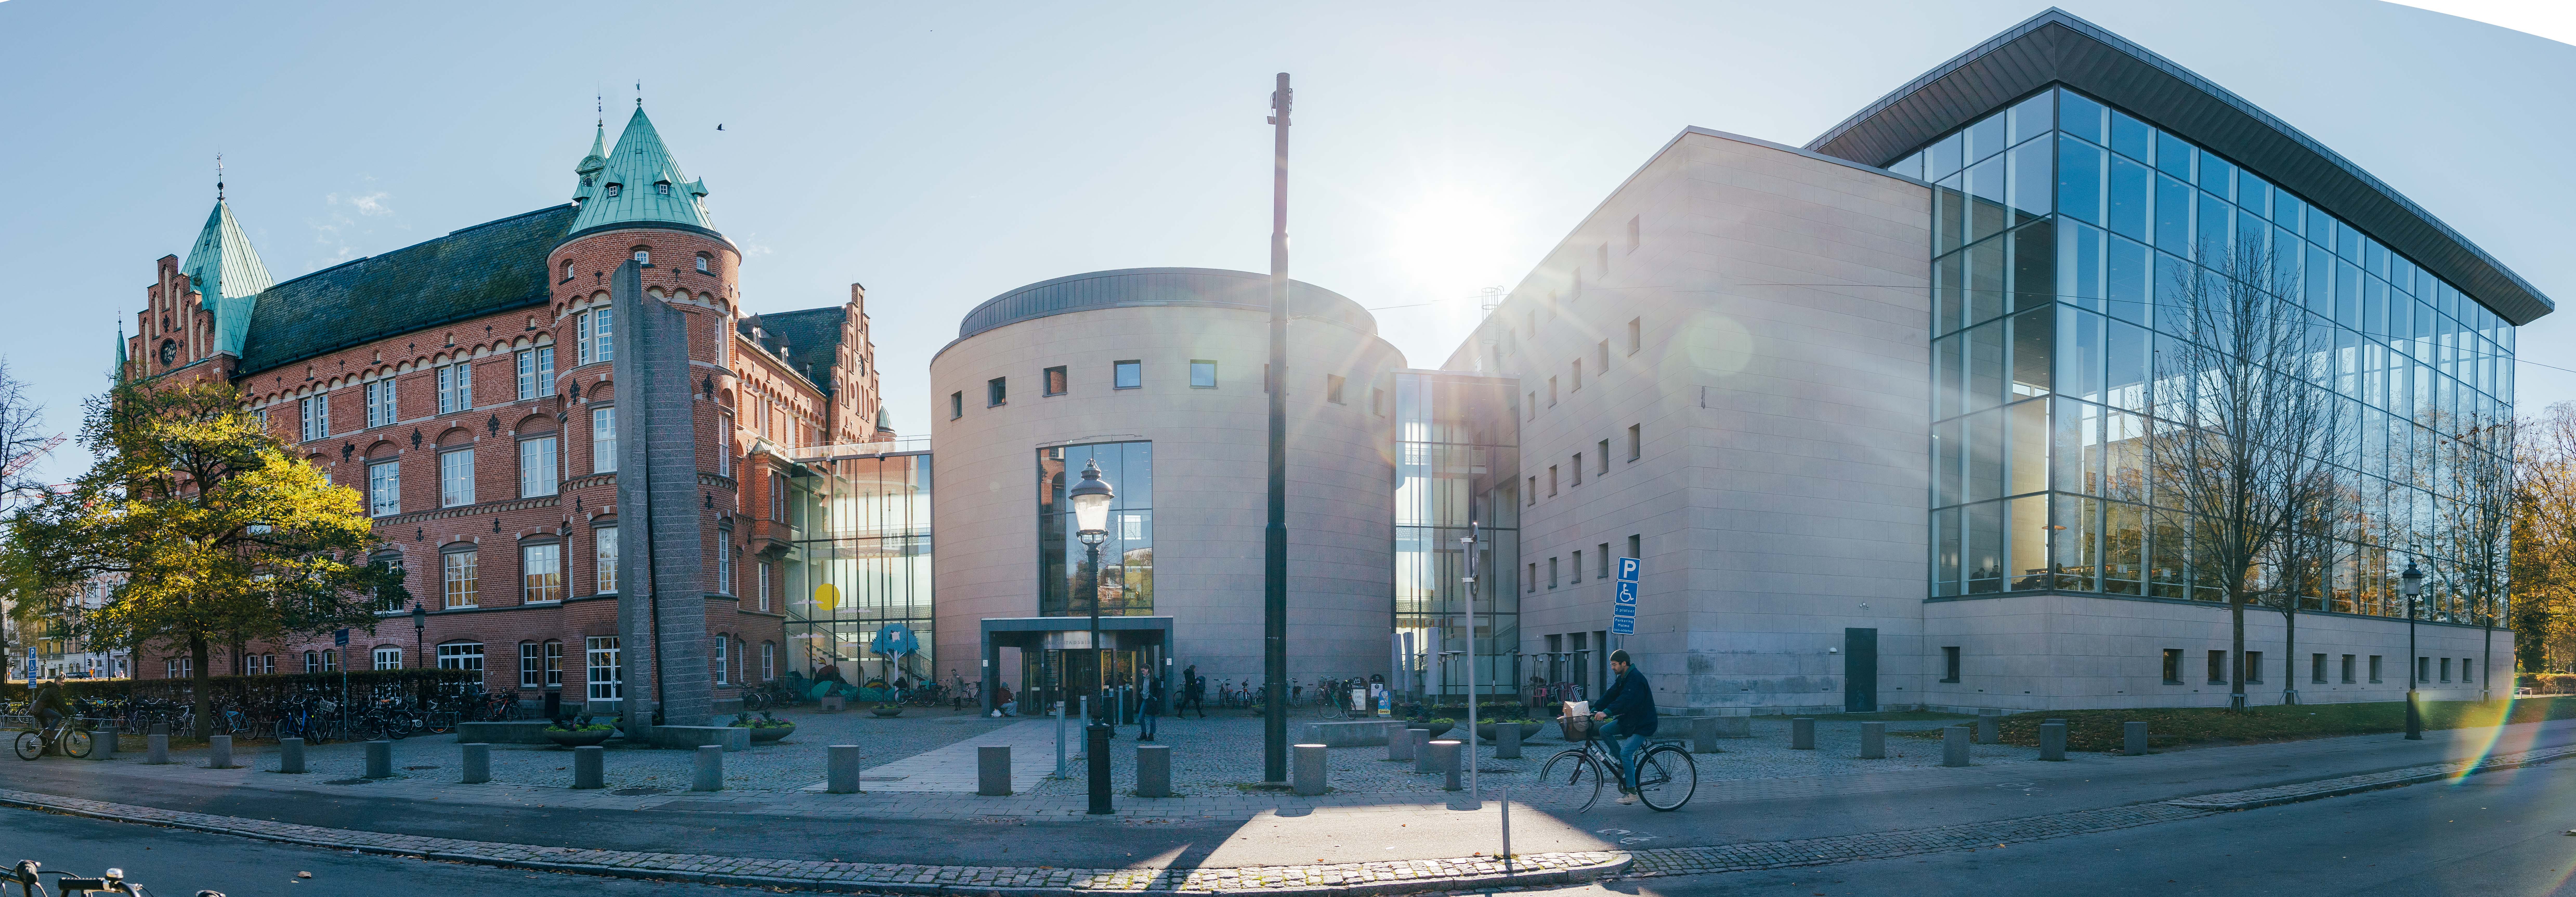 瑞典马尔默图书馆新老建筑组合设计，真完美